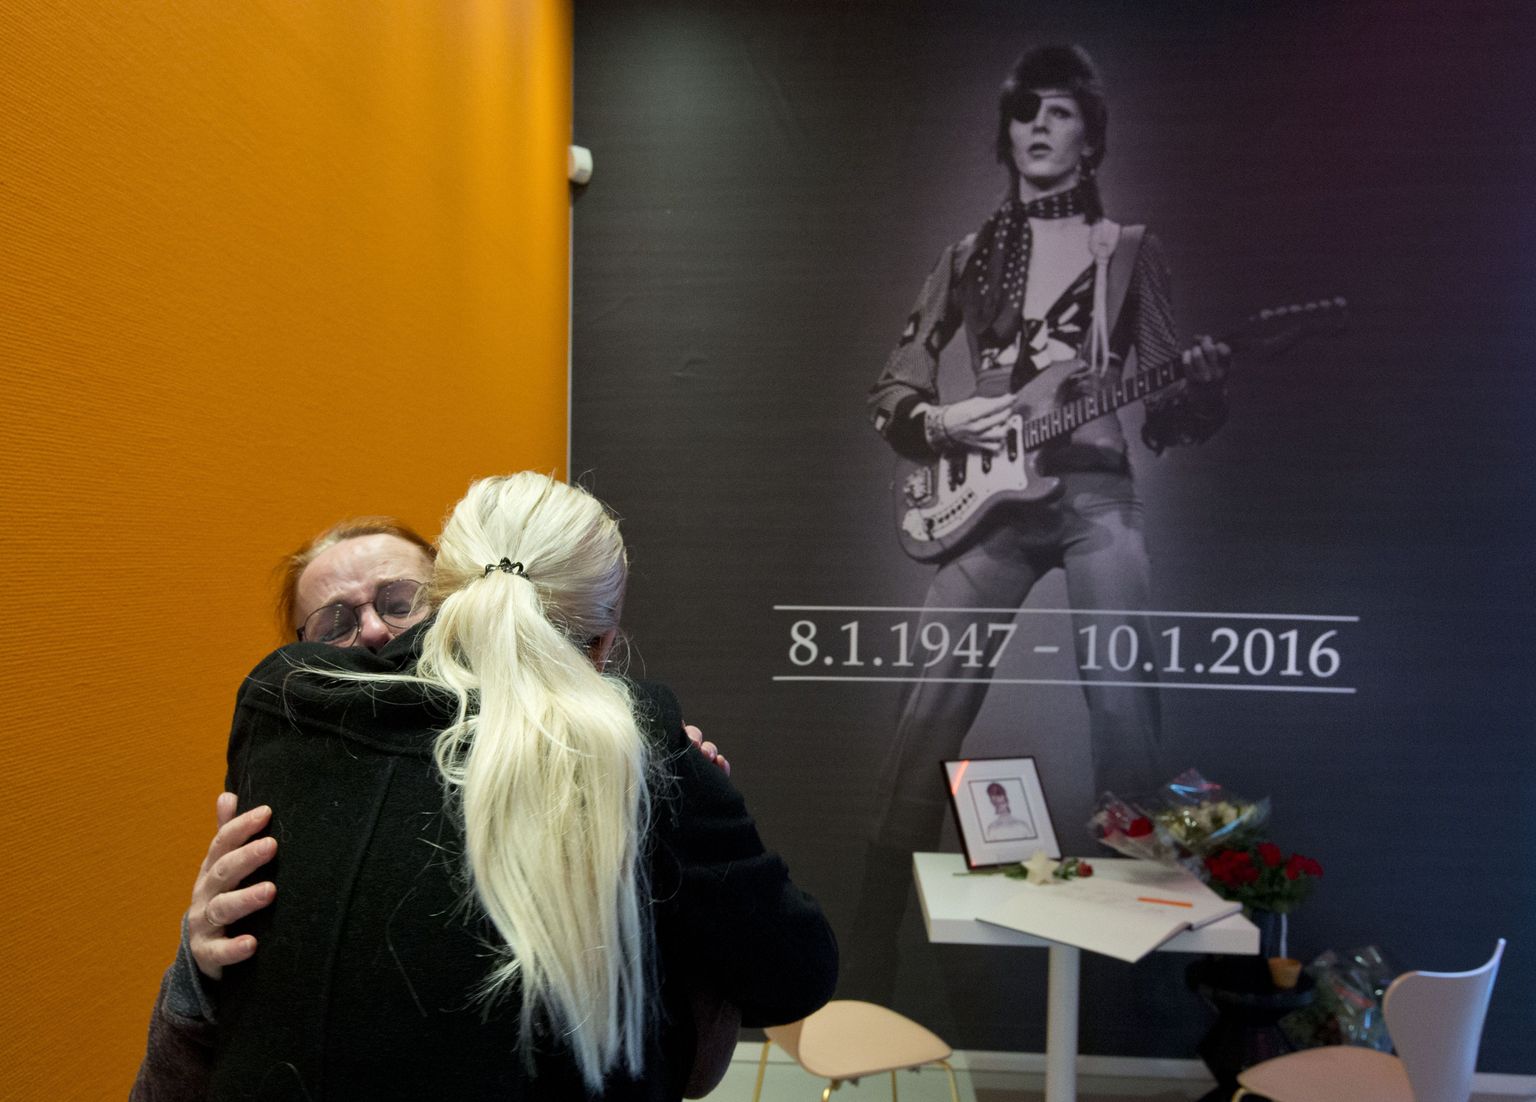 Leinajad David Bowie plakati juures Hollandis Groningenis